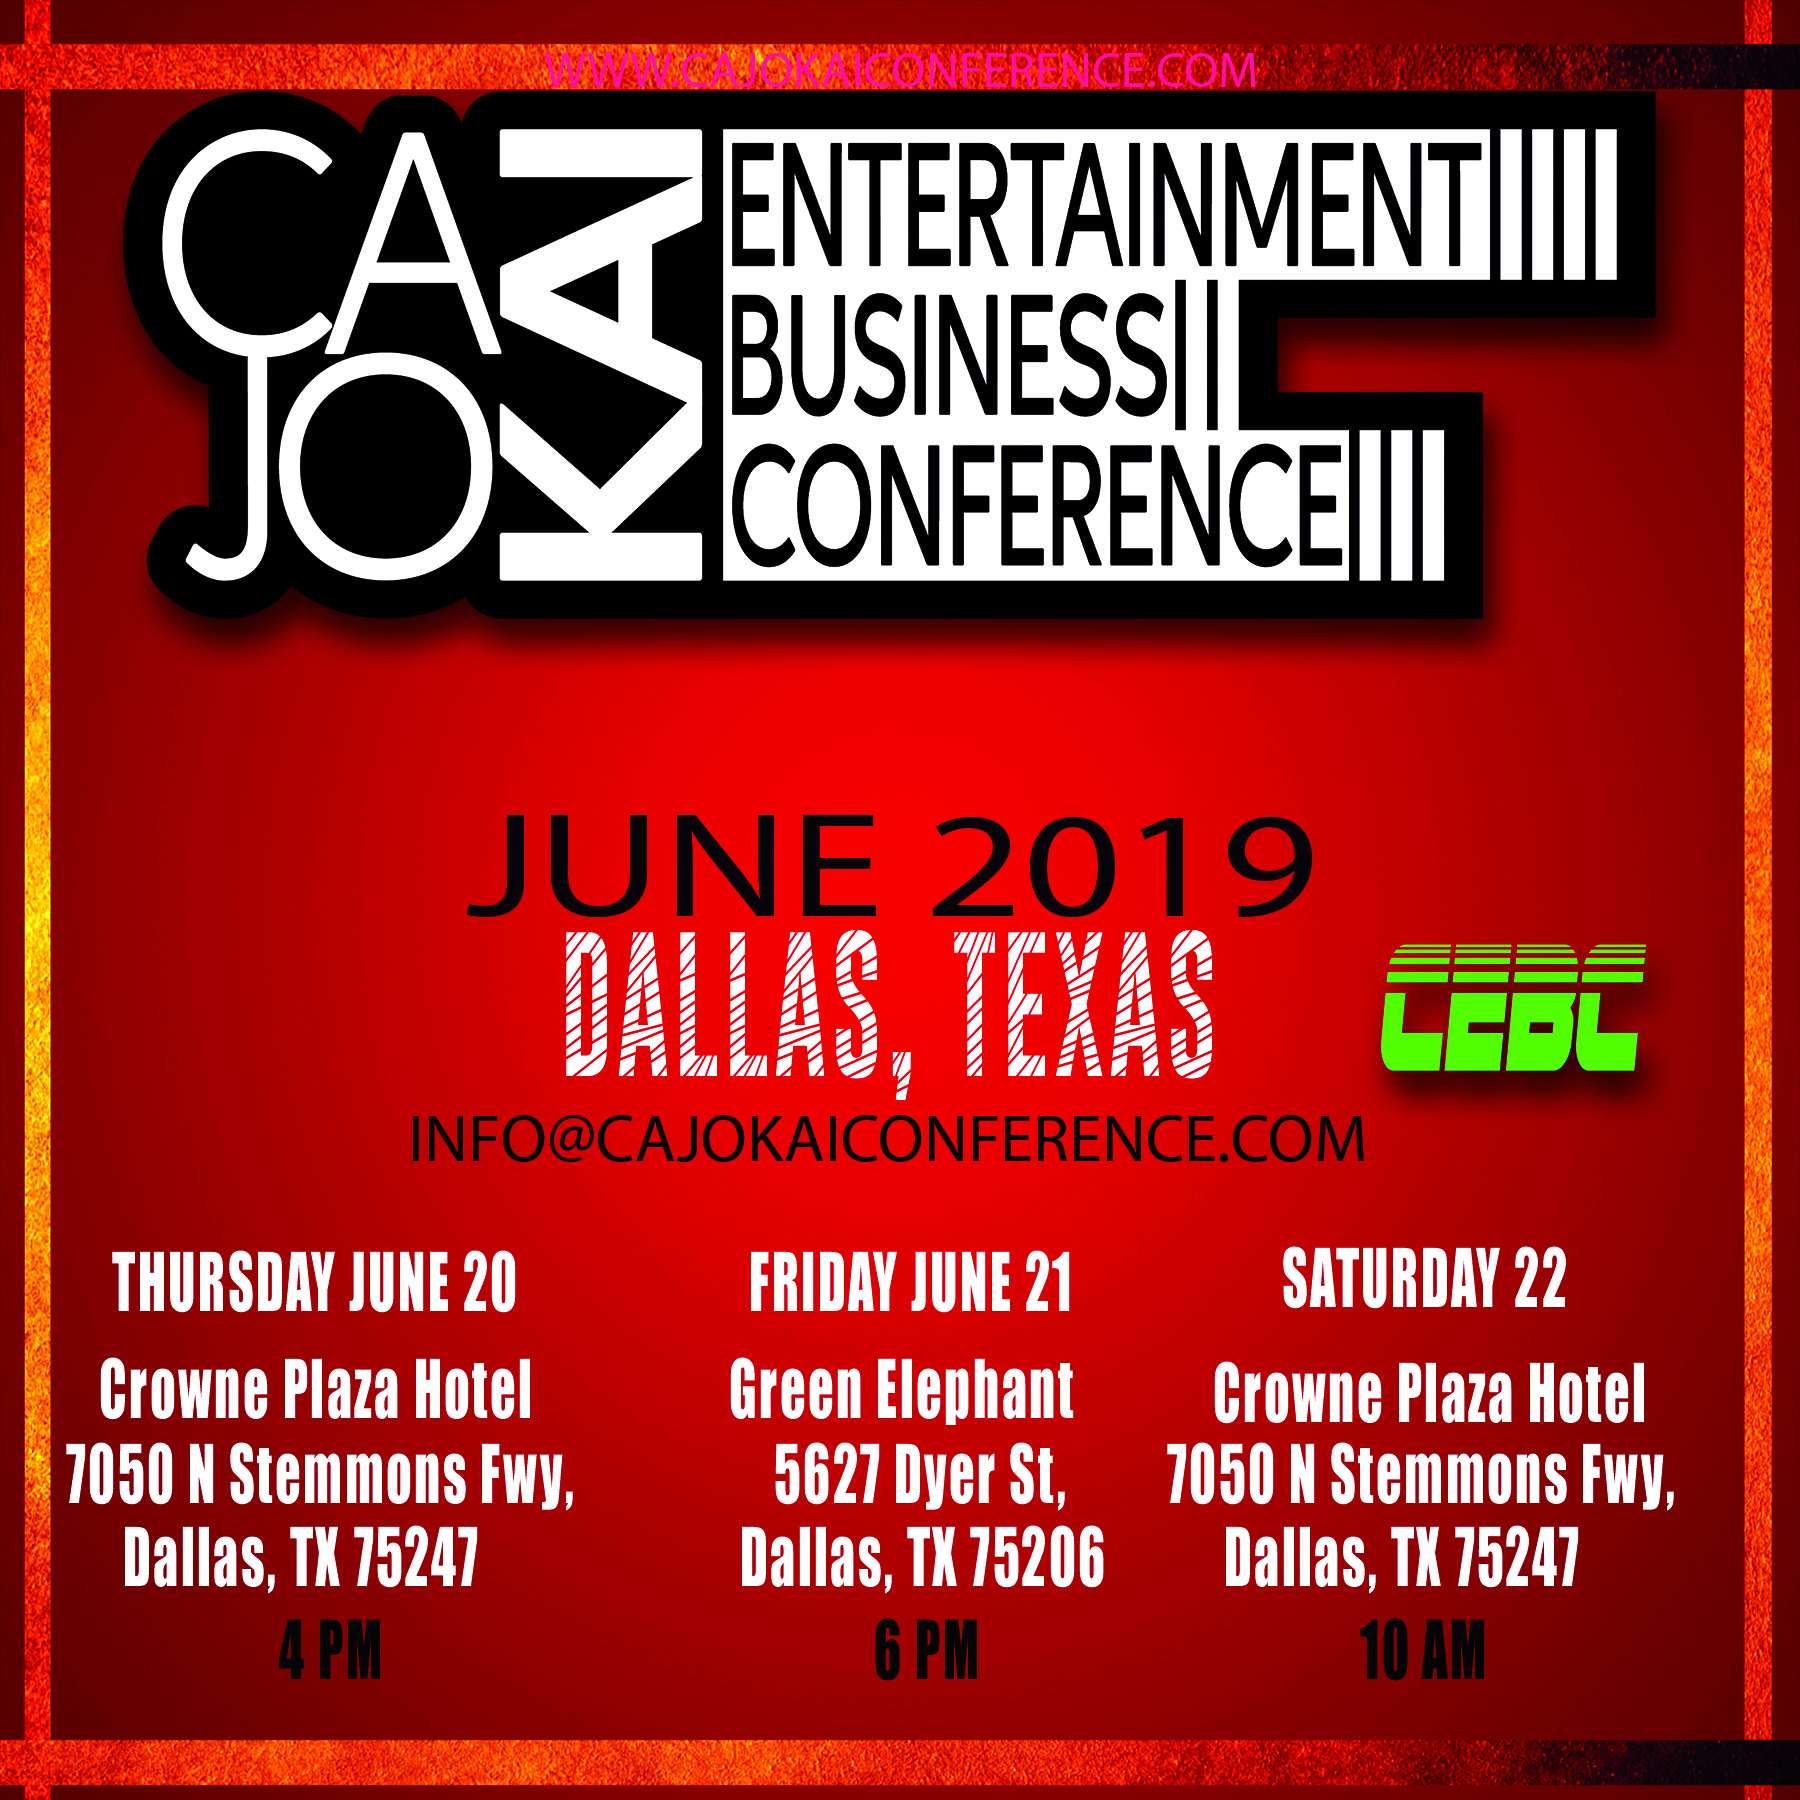 [Event] CaJoKai Entertainment Business Conference (CEBC) – June 20 thru 22, 2019- Dallas Texas